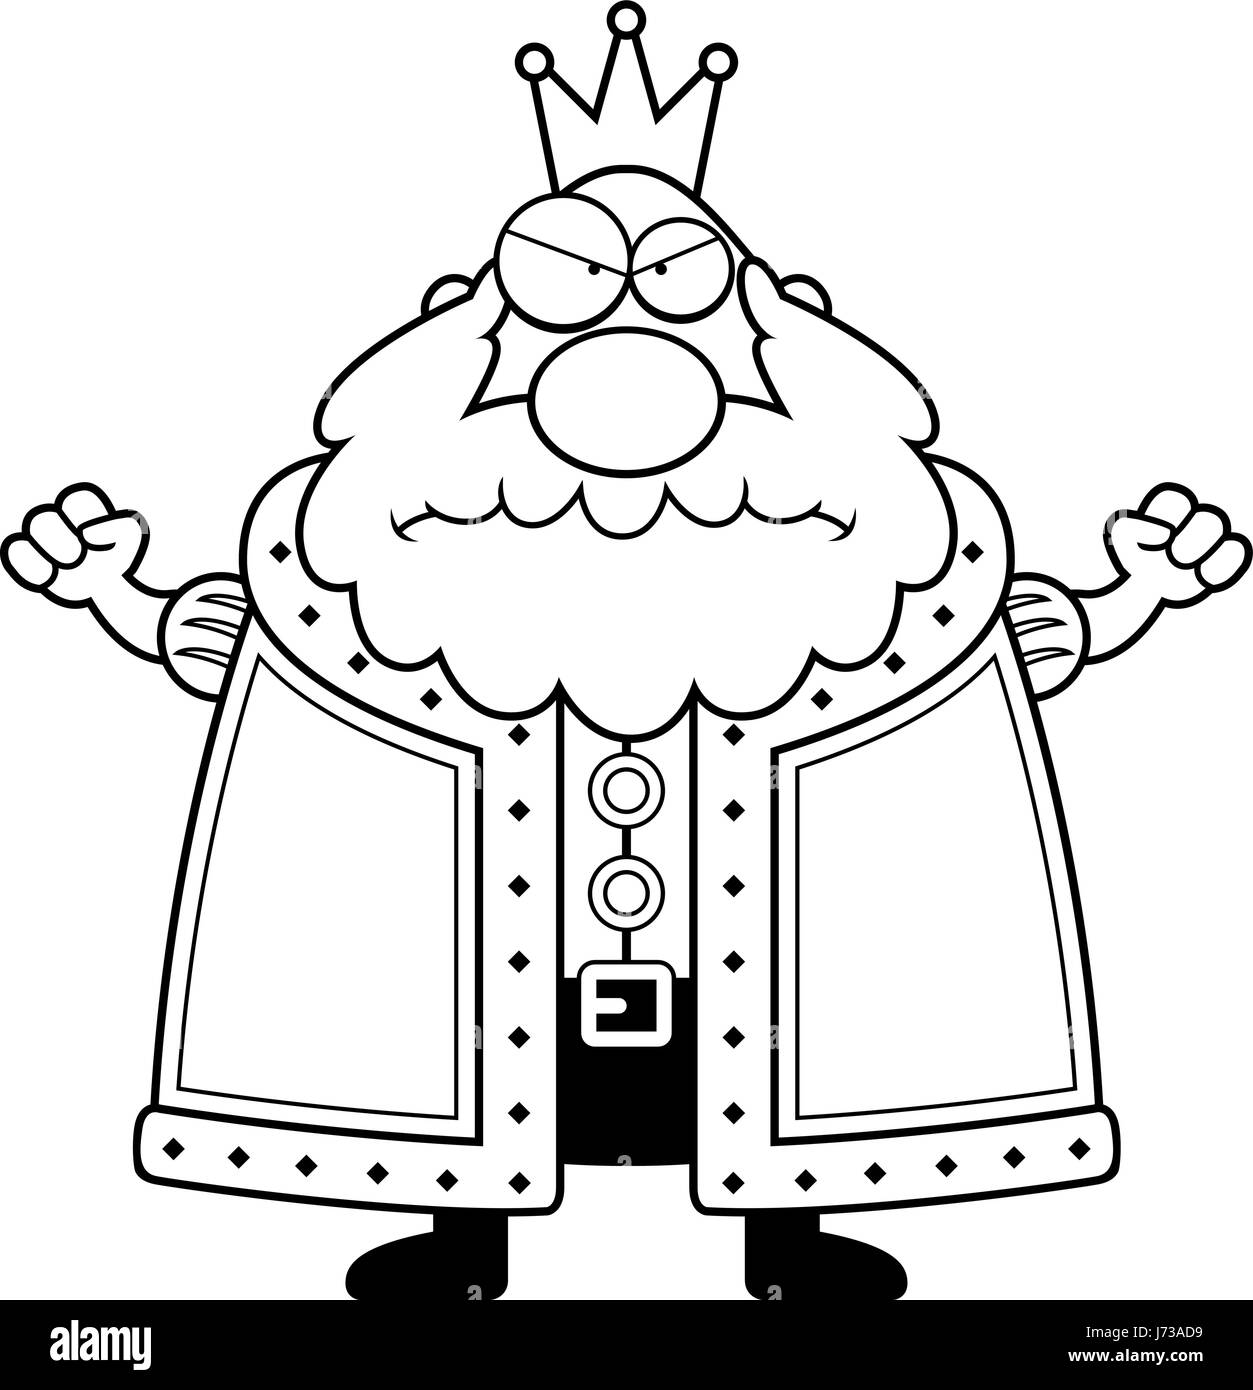 Ein Cartoon-König mit einem wütenden Ausdruck. Stock Vektor